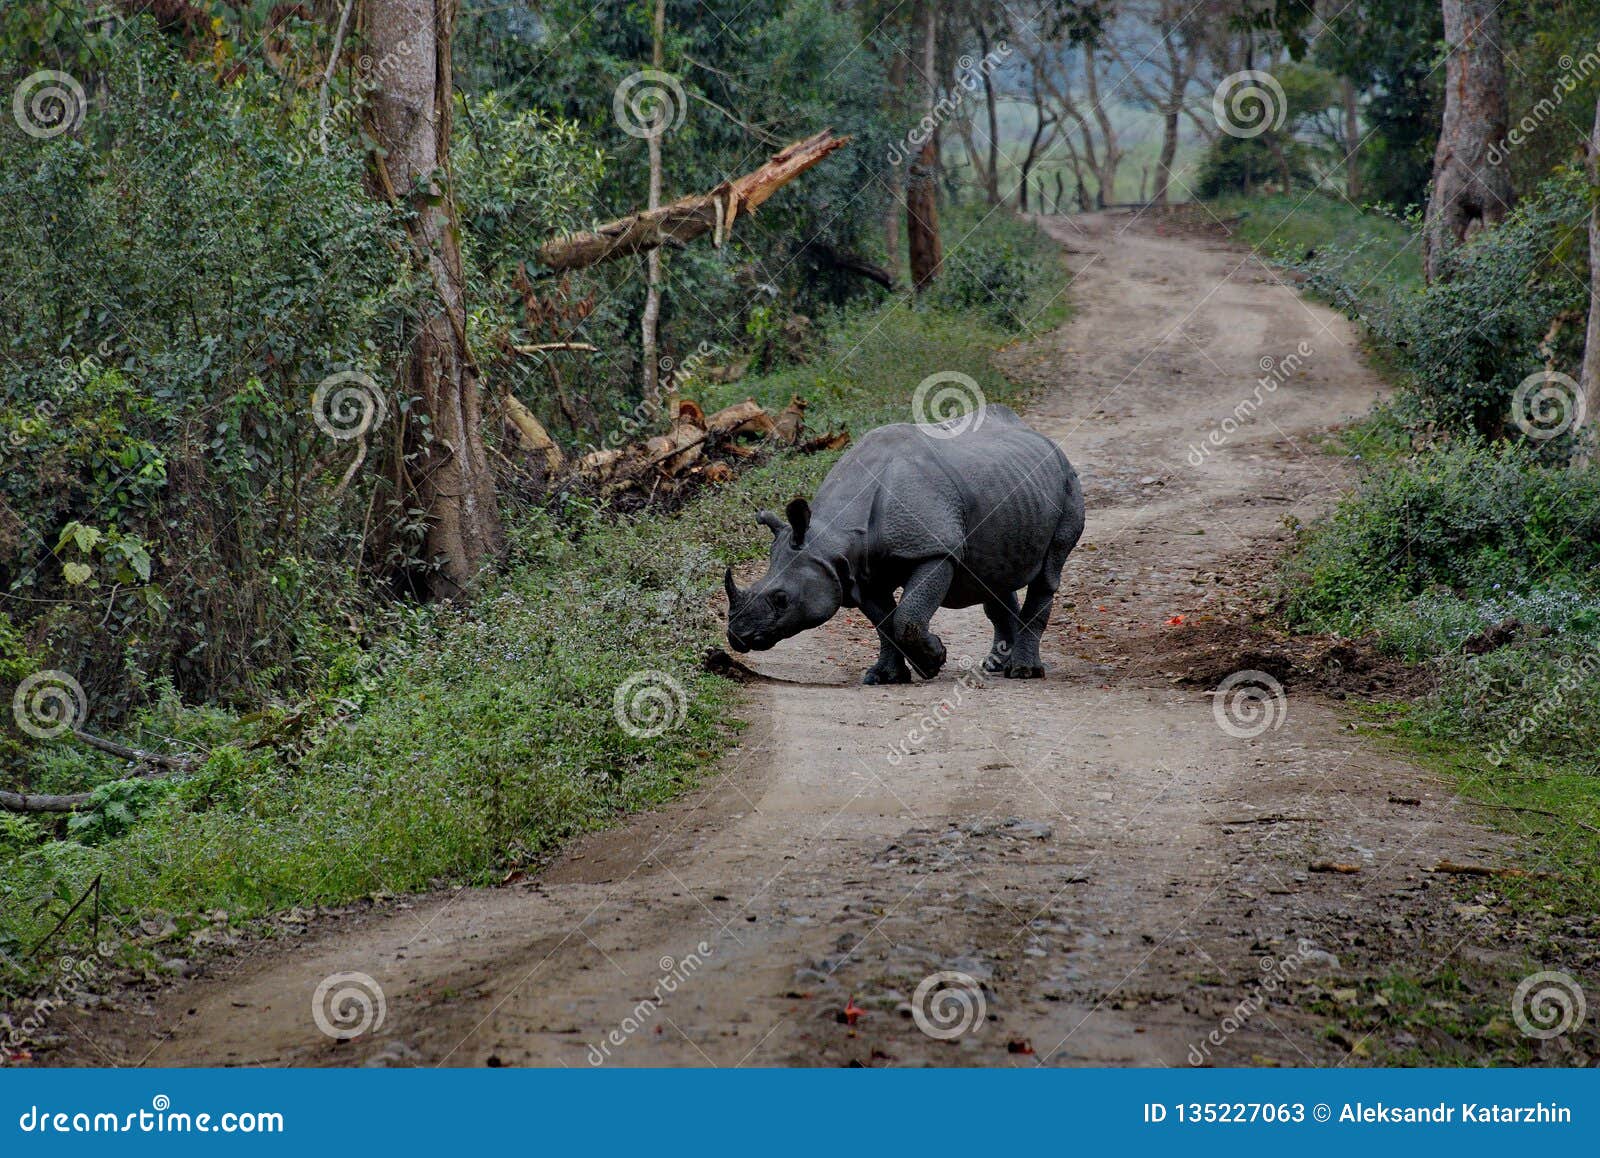 Inhabitants of Kaziranga National Park. White Rhino Stock Image - Image of  asia, protect: 135227063